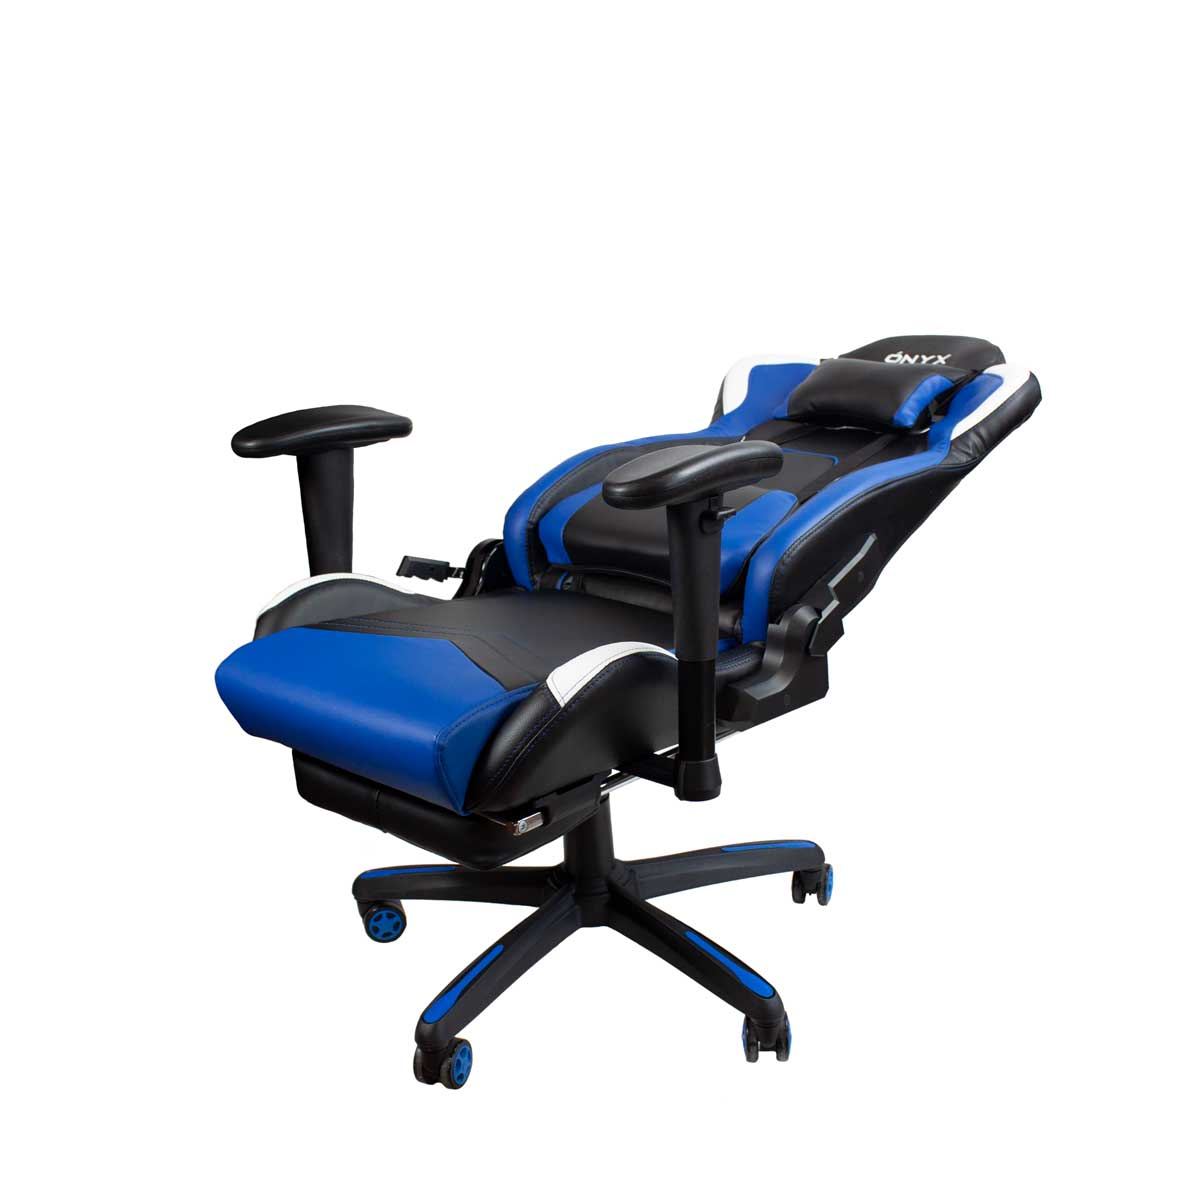 Blau PRIXTON Gaming Chair, Onyx